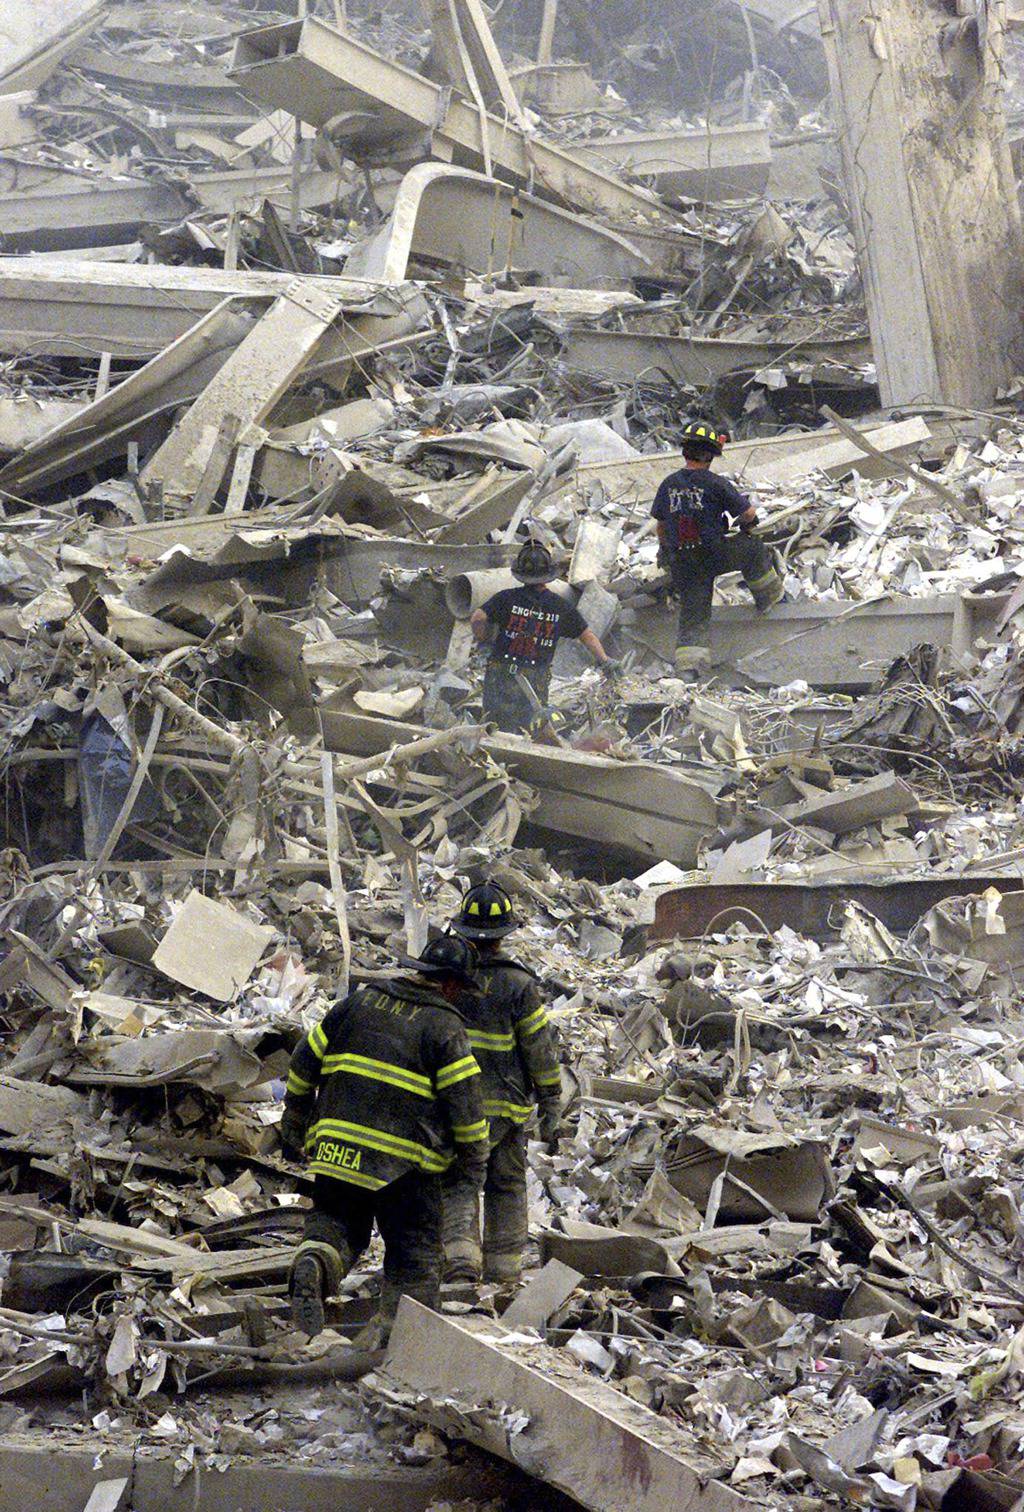 Jedan od najvećih misterija: Nestala dan prije napada 11.9.